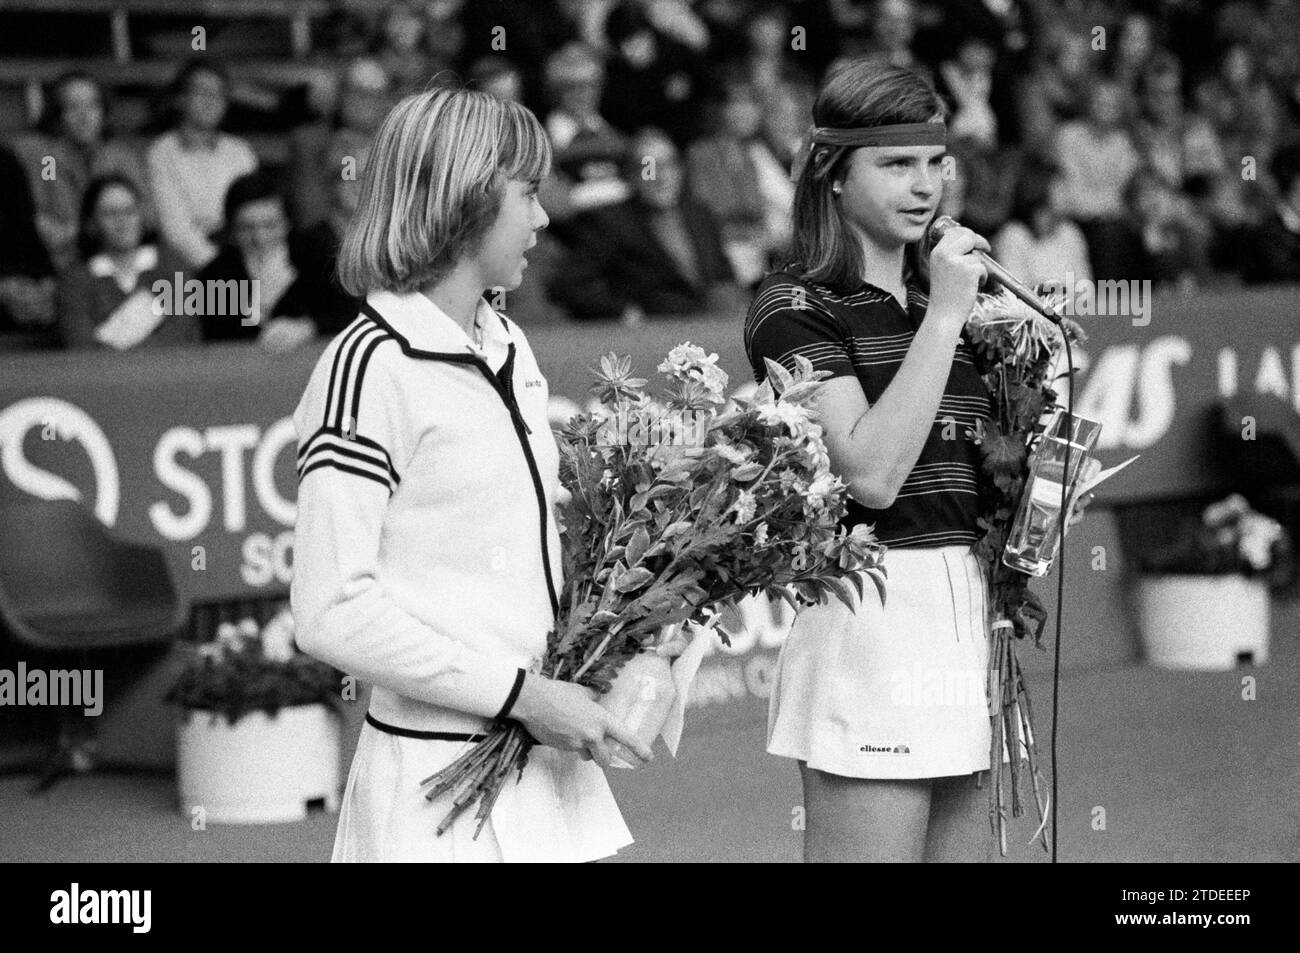 Die tschechische Tennisspielerin Hana Mandlikova Spech nach dem Finalsieg gegen die westdeutsche Spielerin Bettina Bunge beim Stockholm Open Turnier 1980 Stockfoto